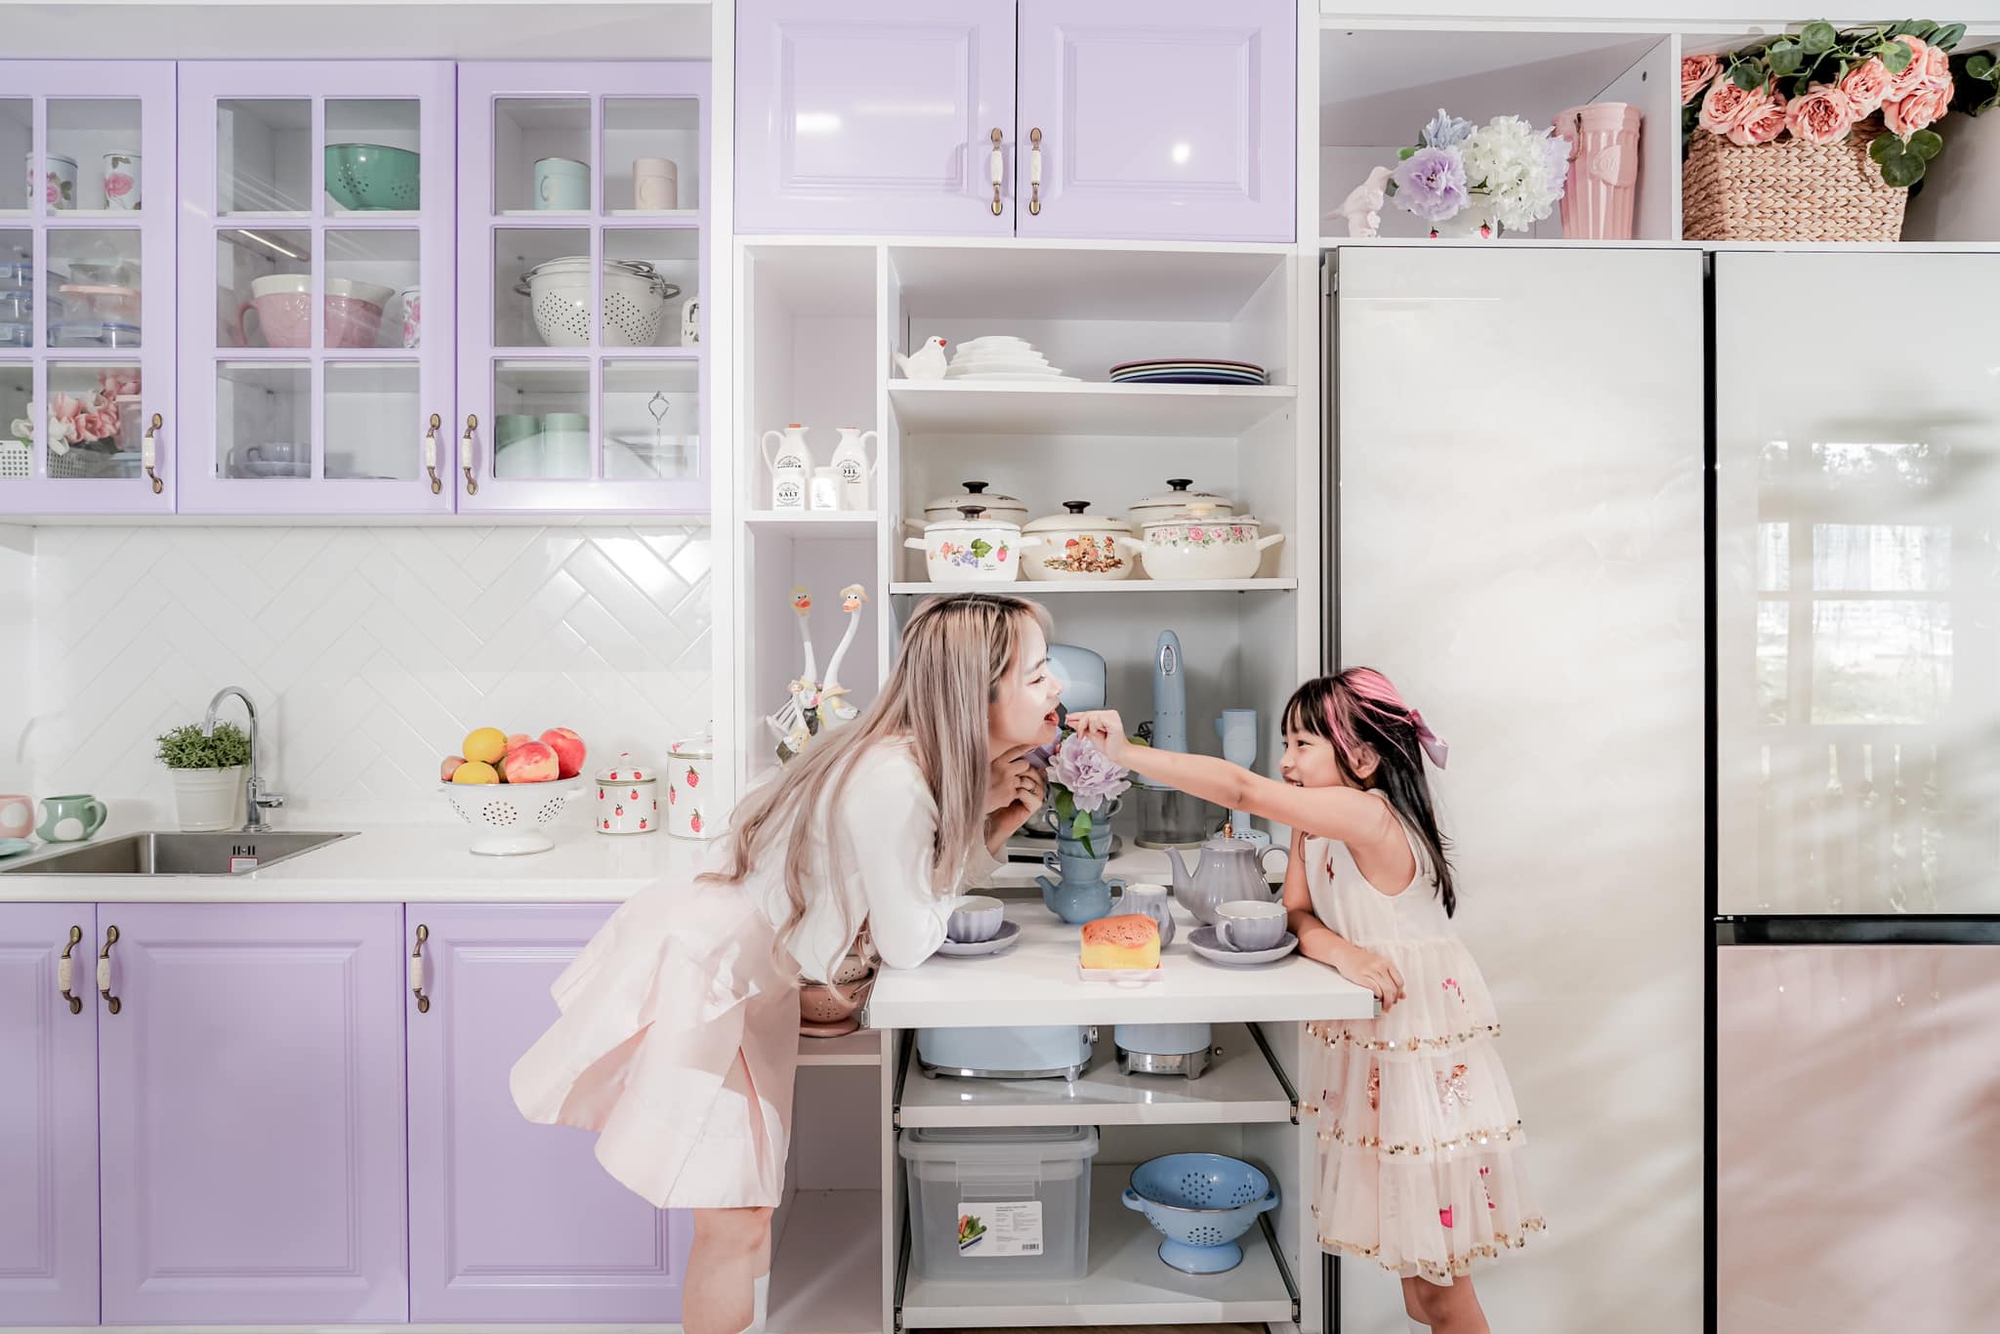 Góc bếp màu tím pastel trong ngôi nhà xanh lơ đẹp thơ mộng với đủ các thiết bị hiện đại của mẹ 3 con ở TP. HCM - Ảnh 2.